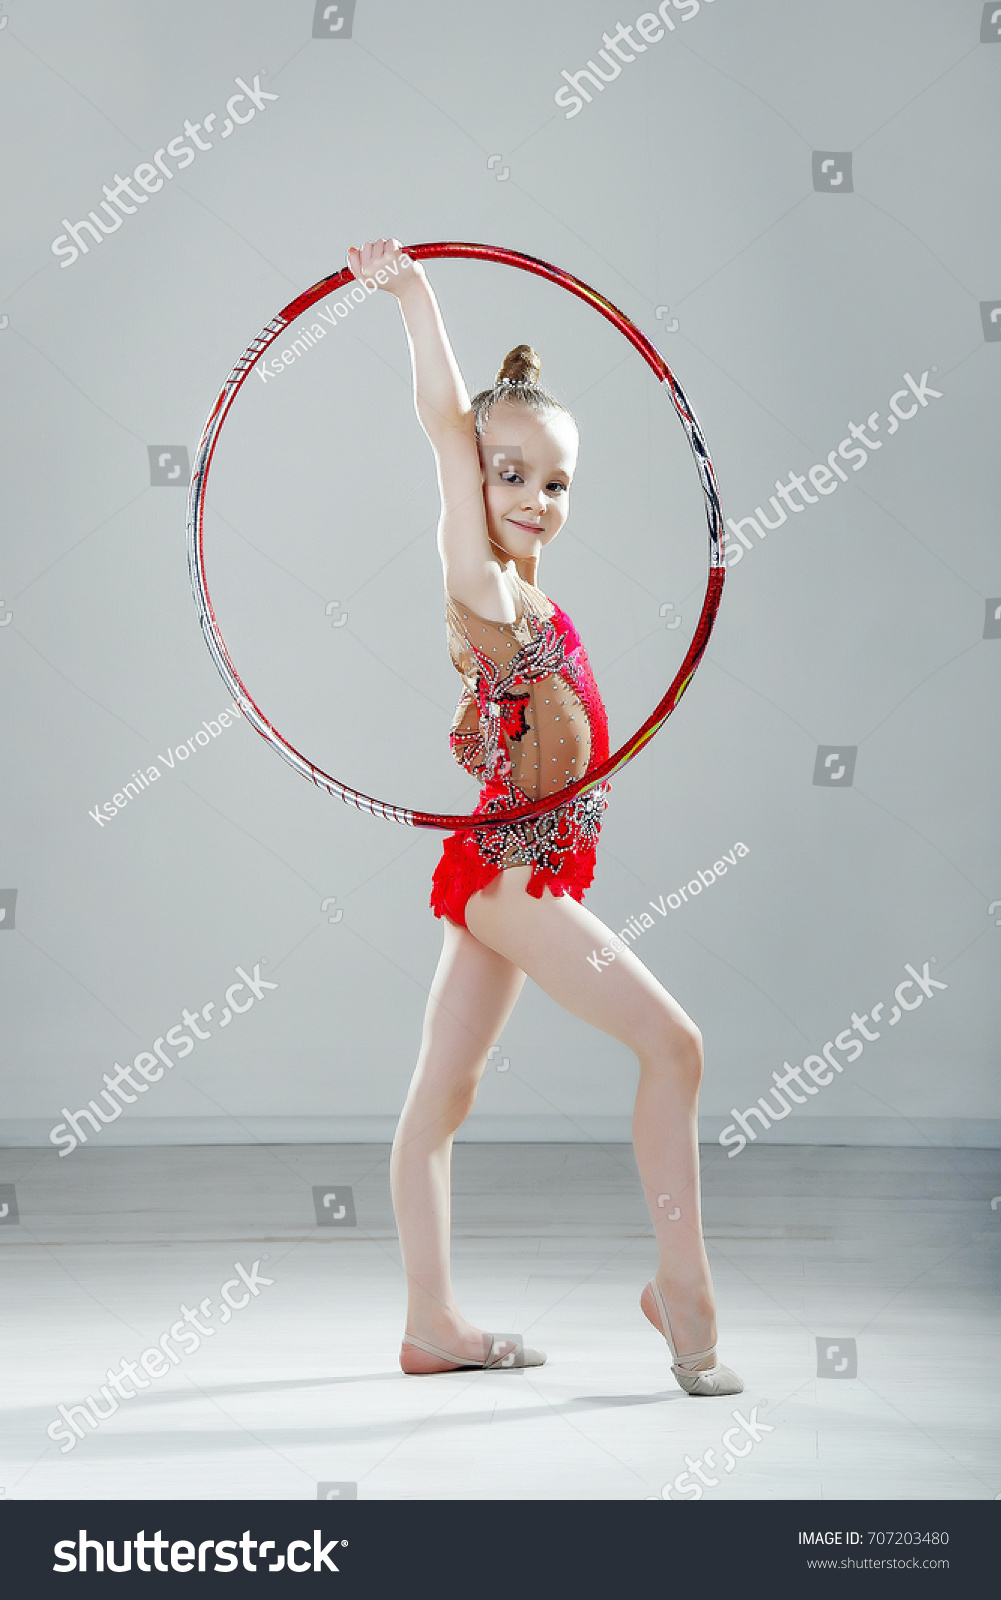 flexible hula hoop